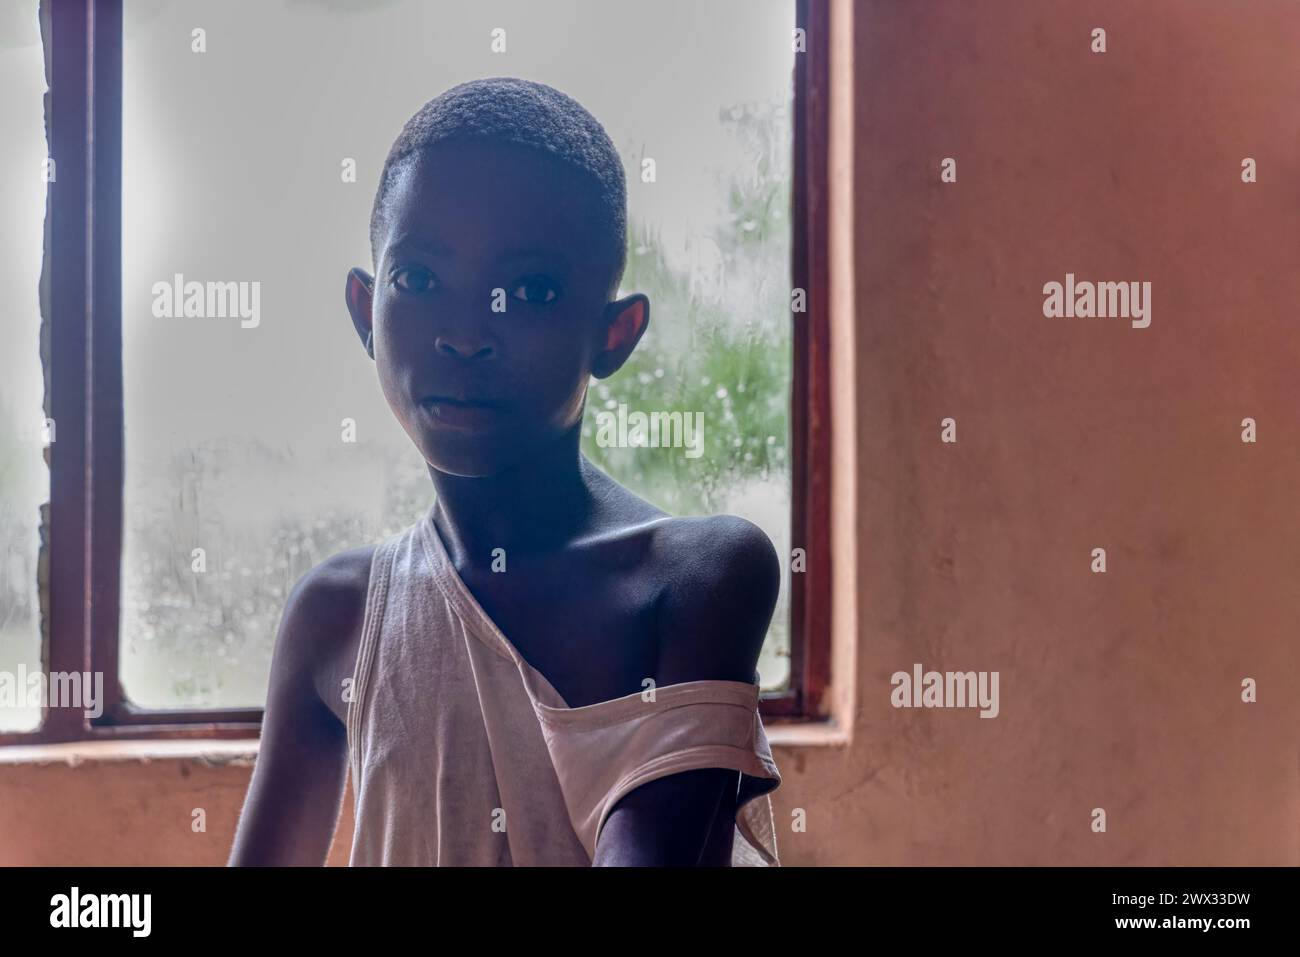 carestia in africa, ragazza triste e magra con corpo minuscolo e braccia magre, retroilluminazione dalla finestra di una stanza Foto Stock